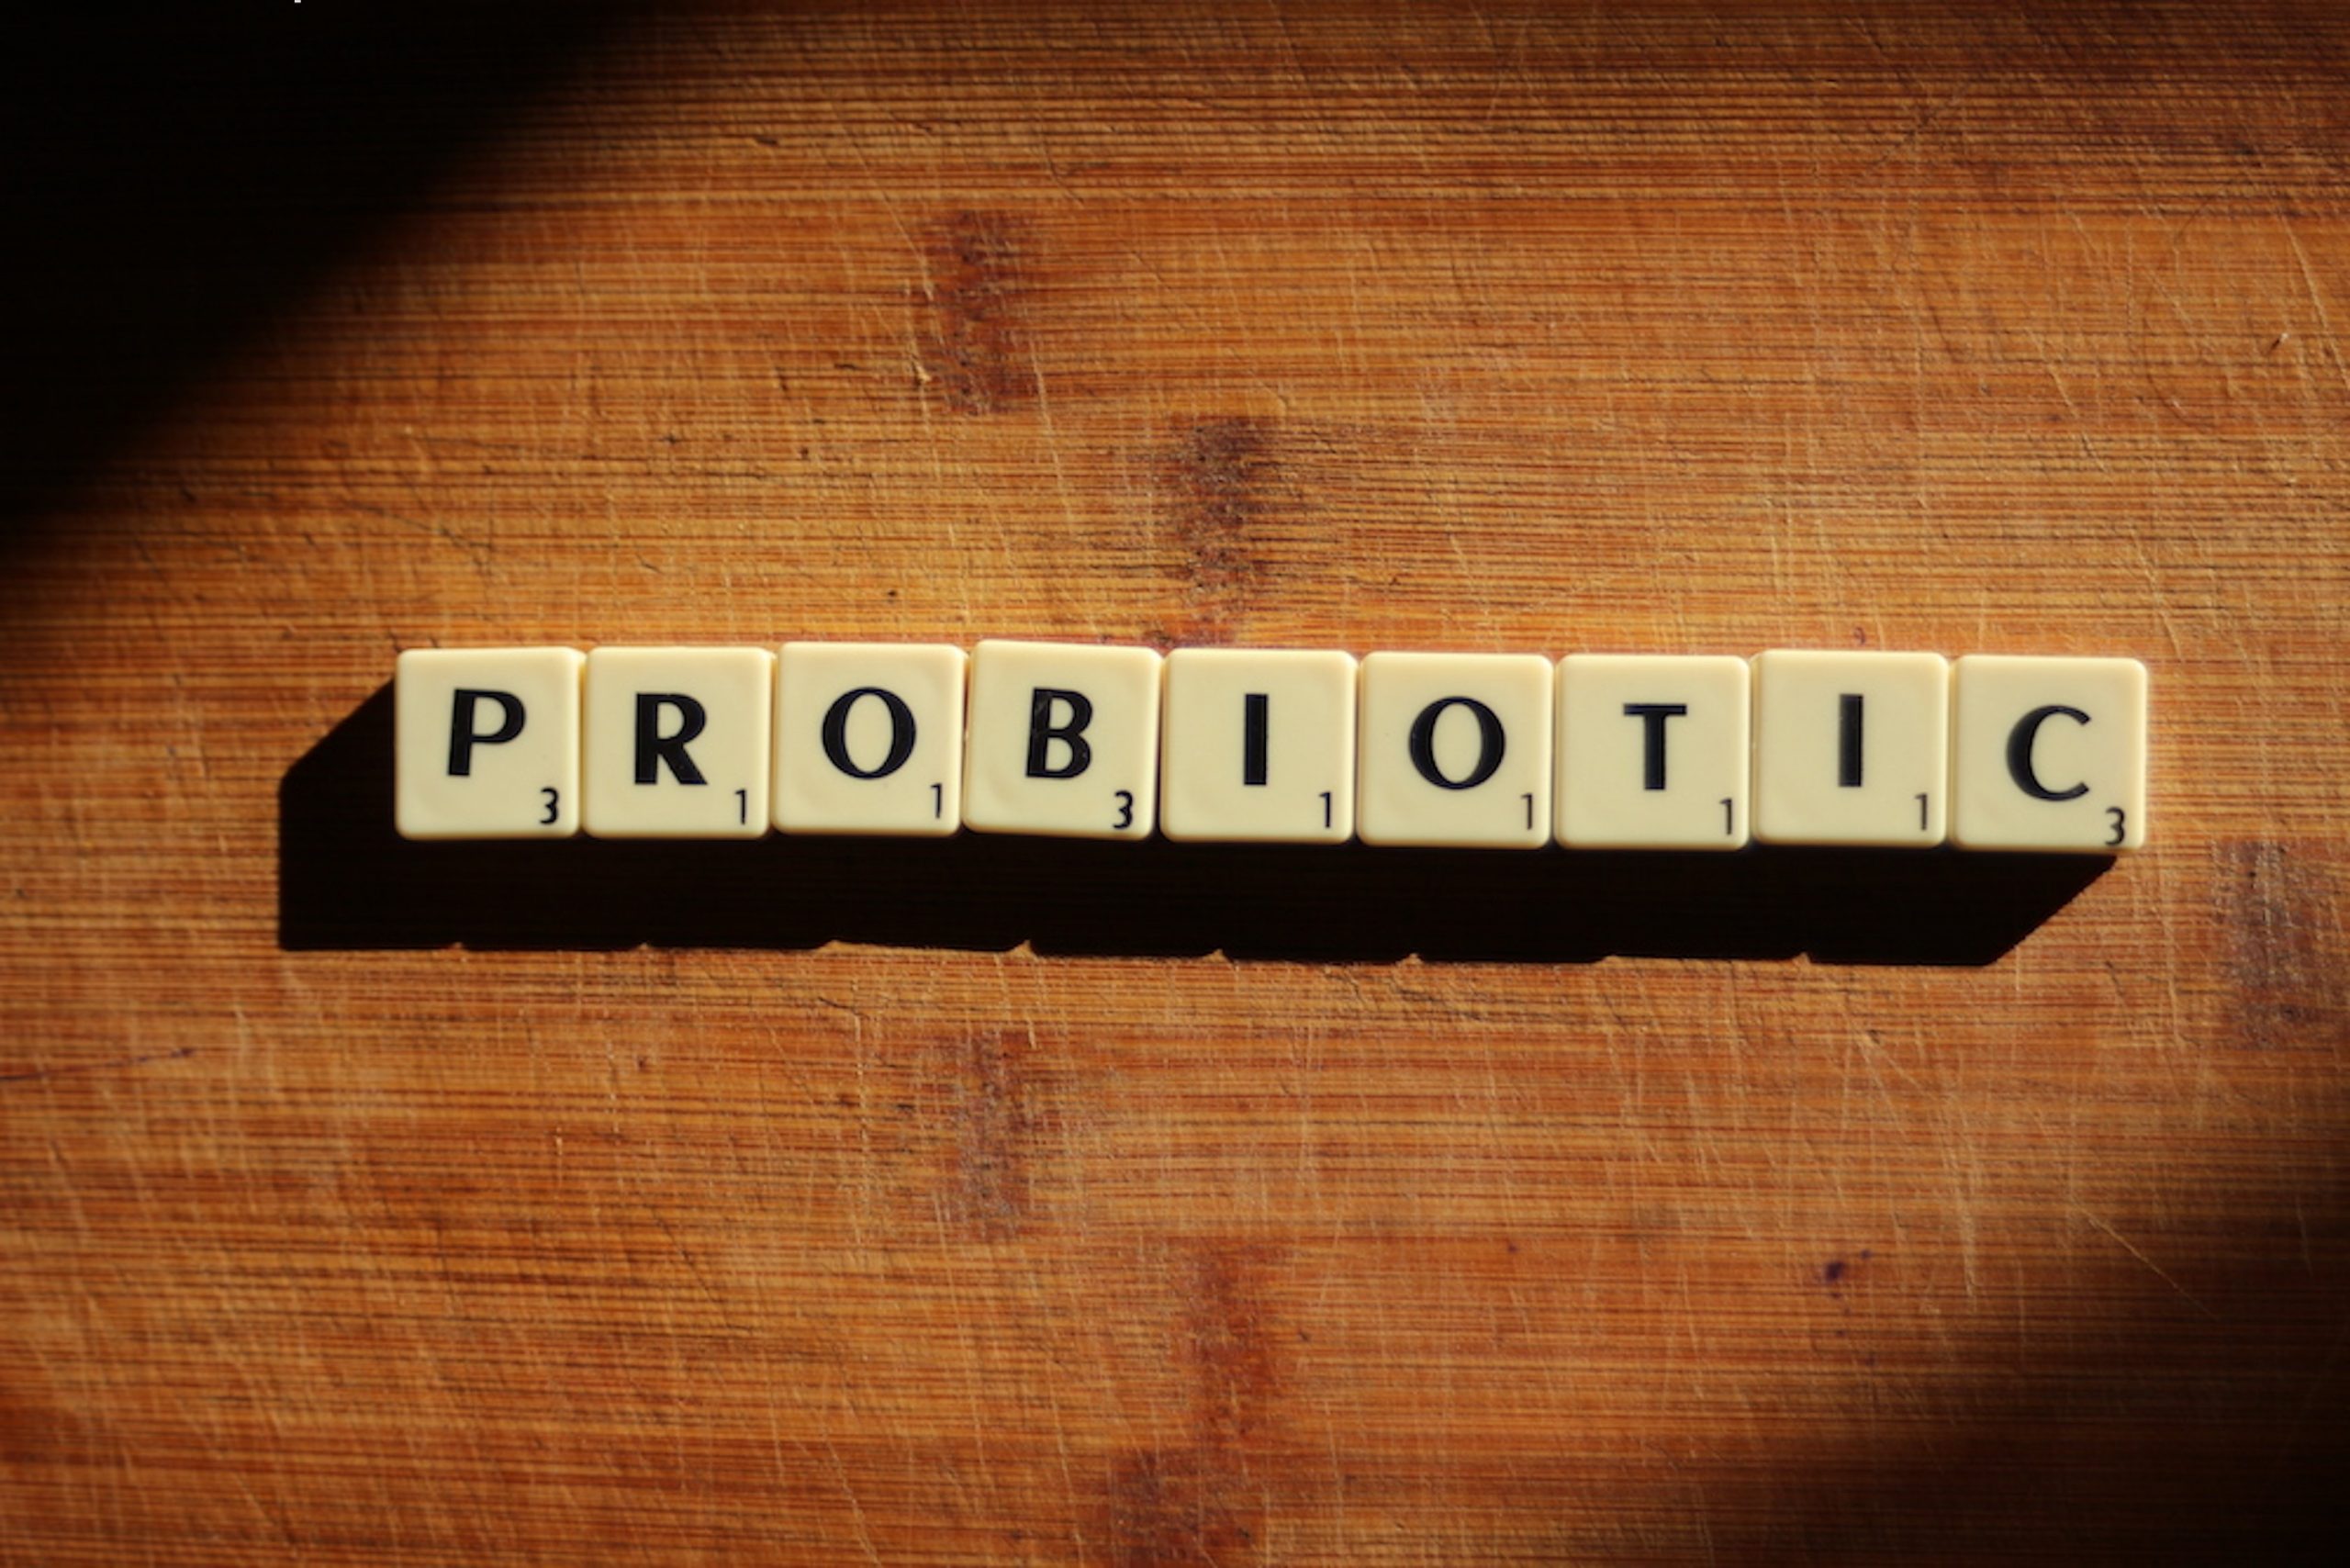 Harmonelo recenze: Vyplatí se připlatit a zkusit tato probiotika?